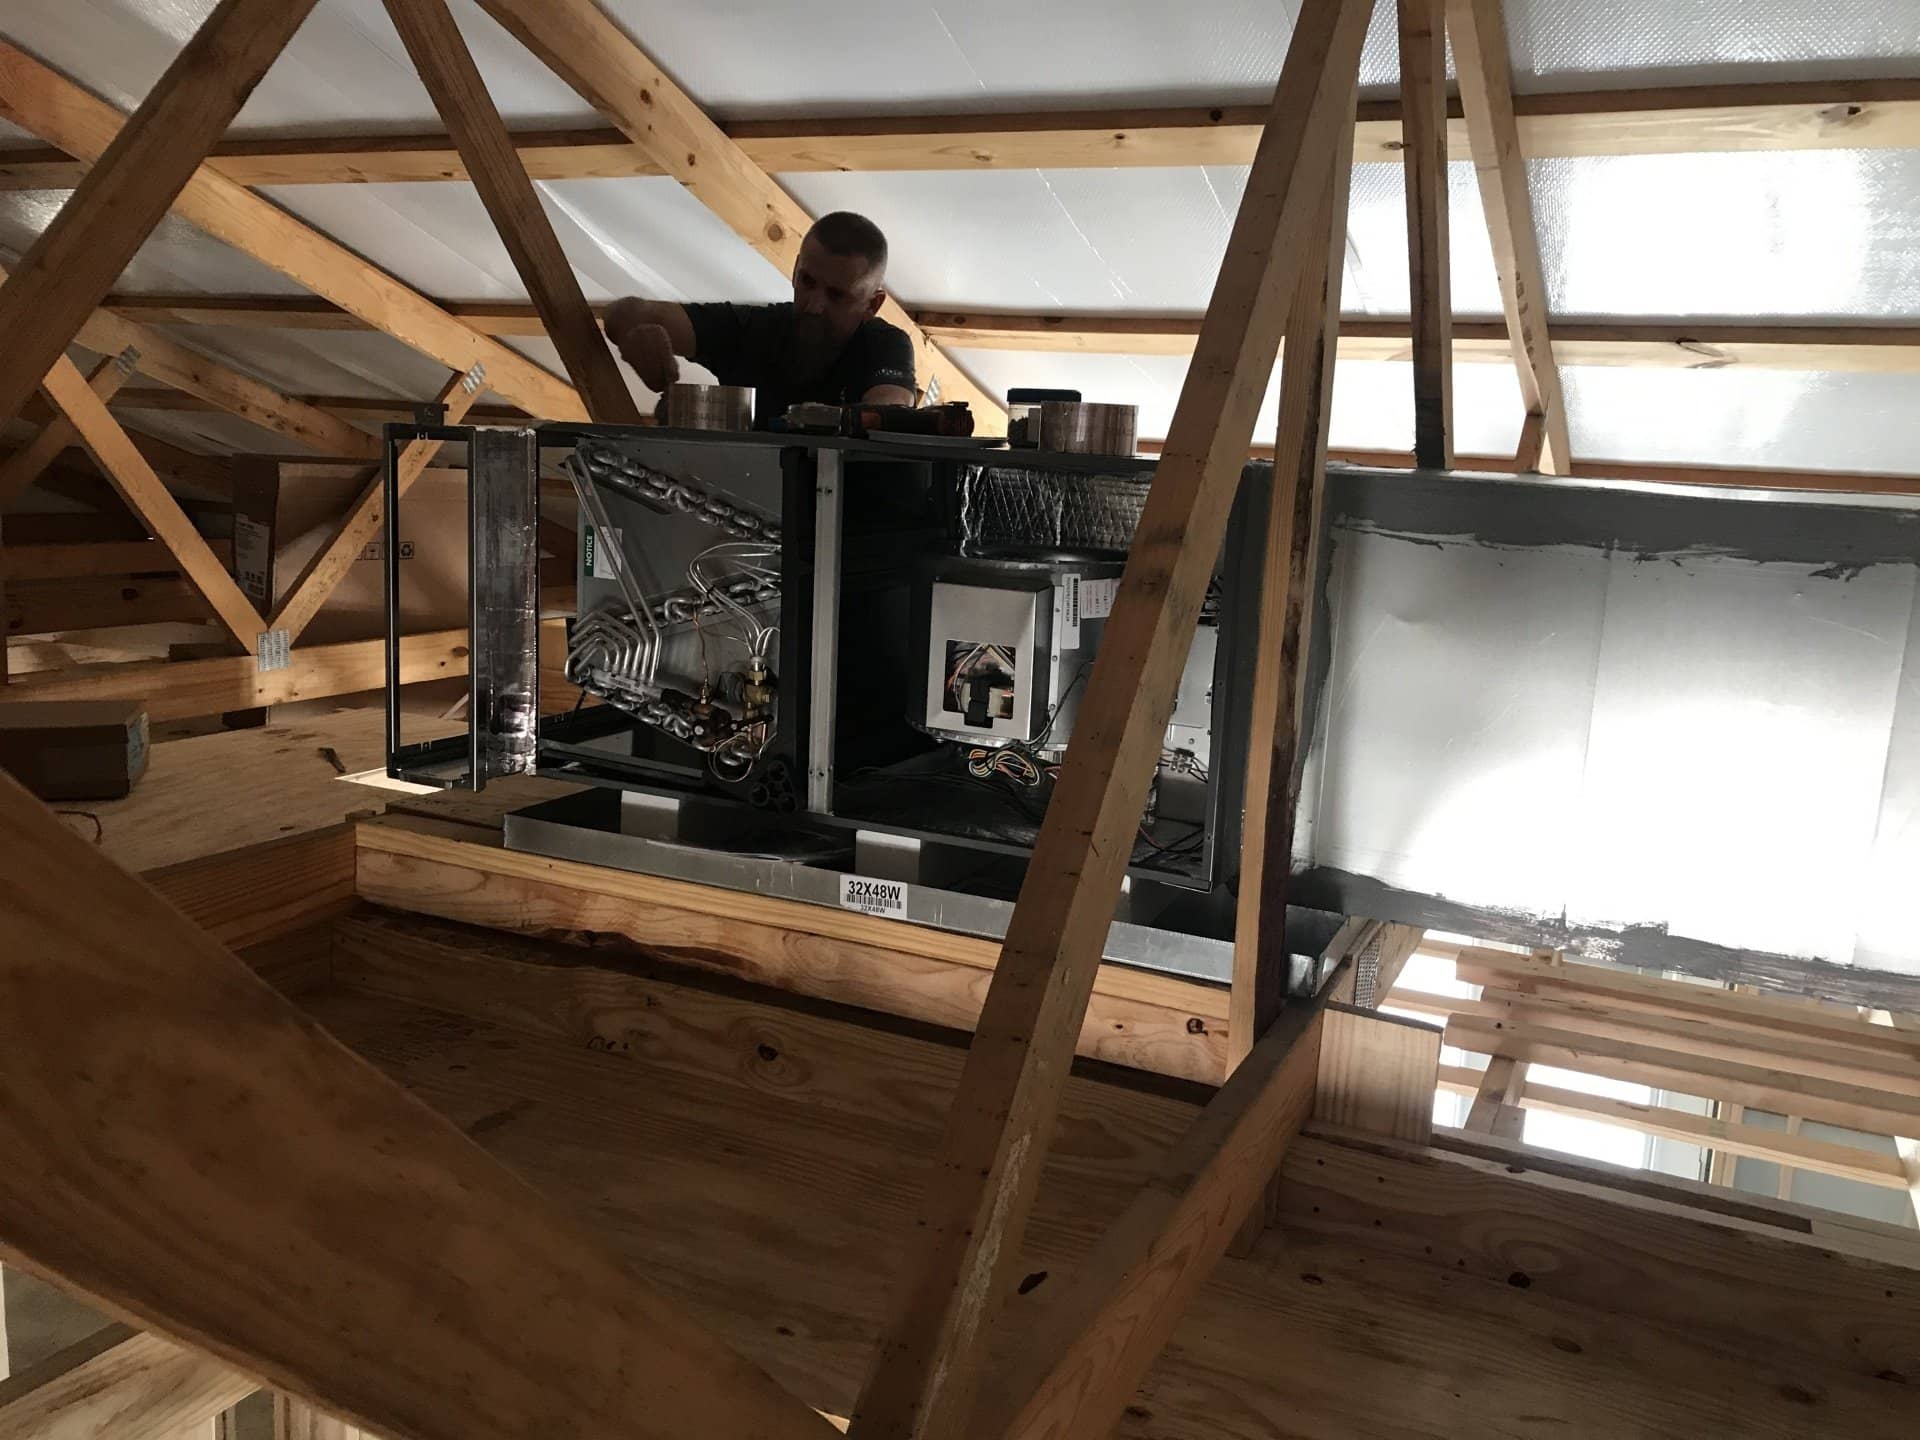 attic install hvac unit ductwork